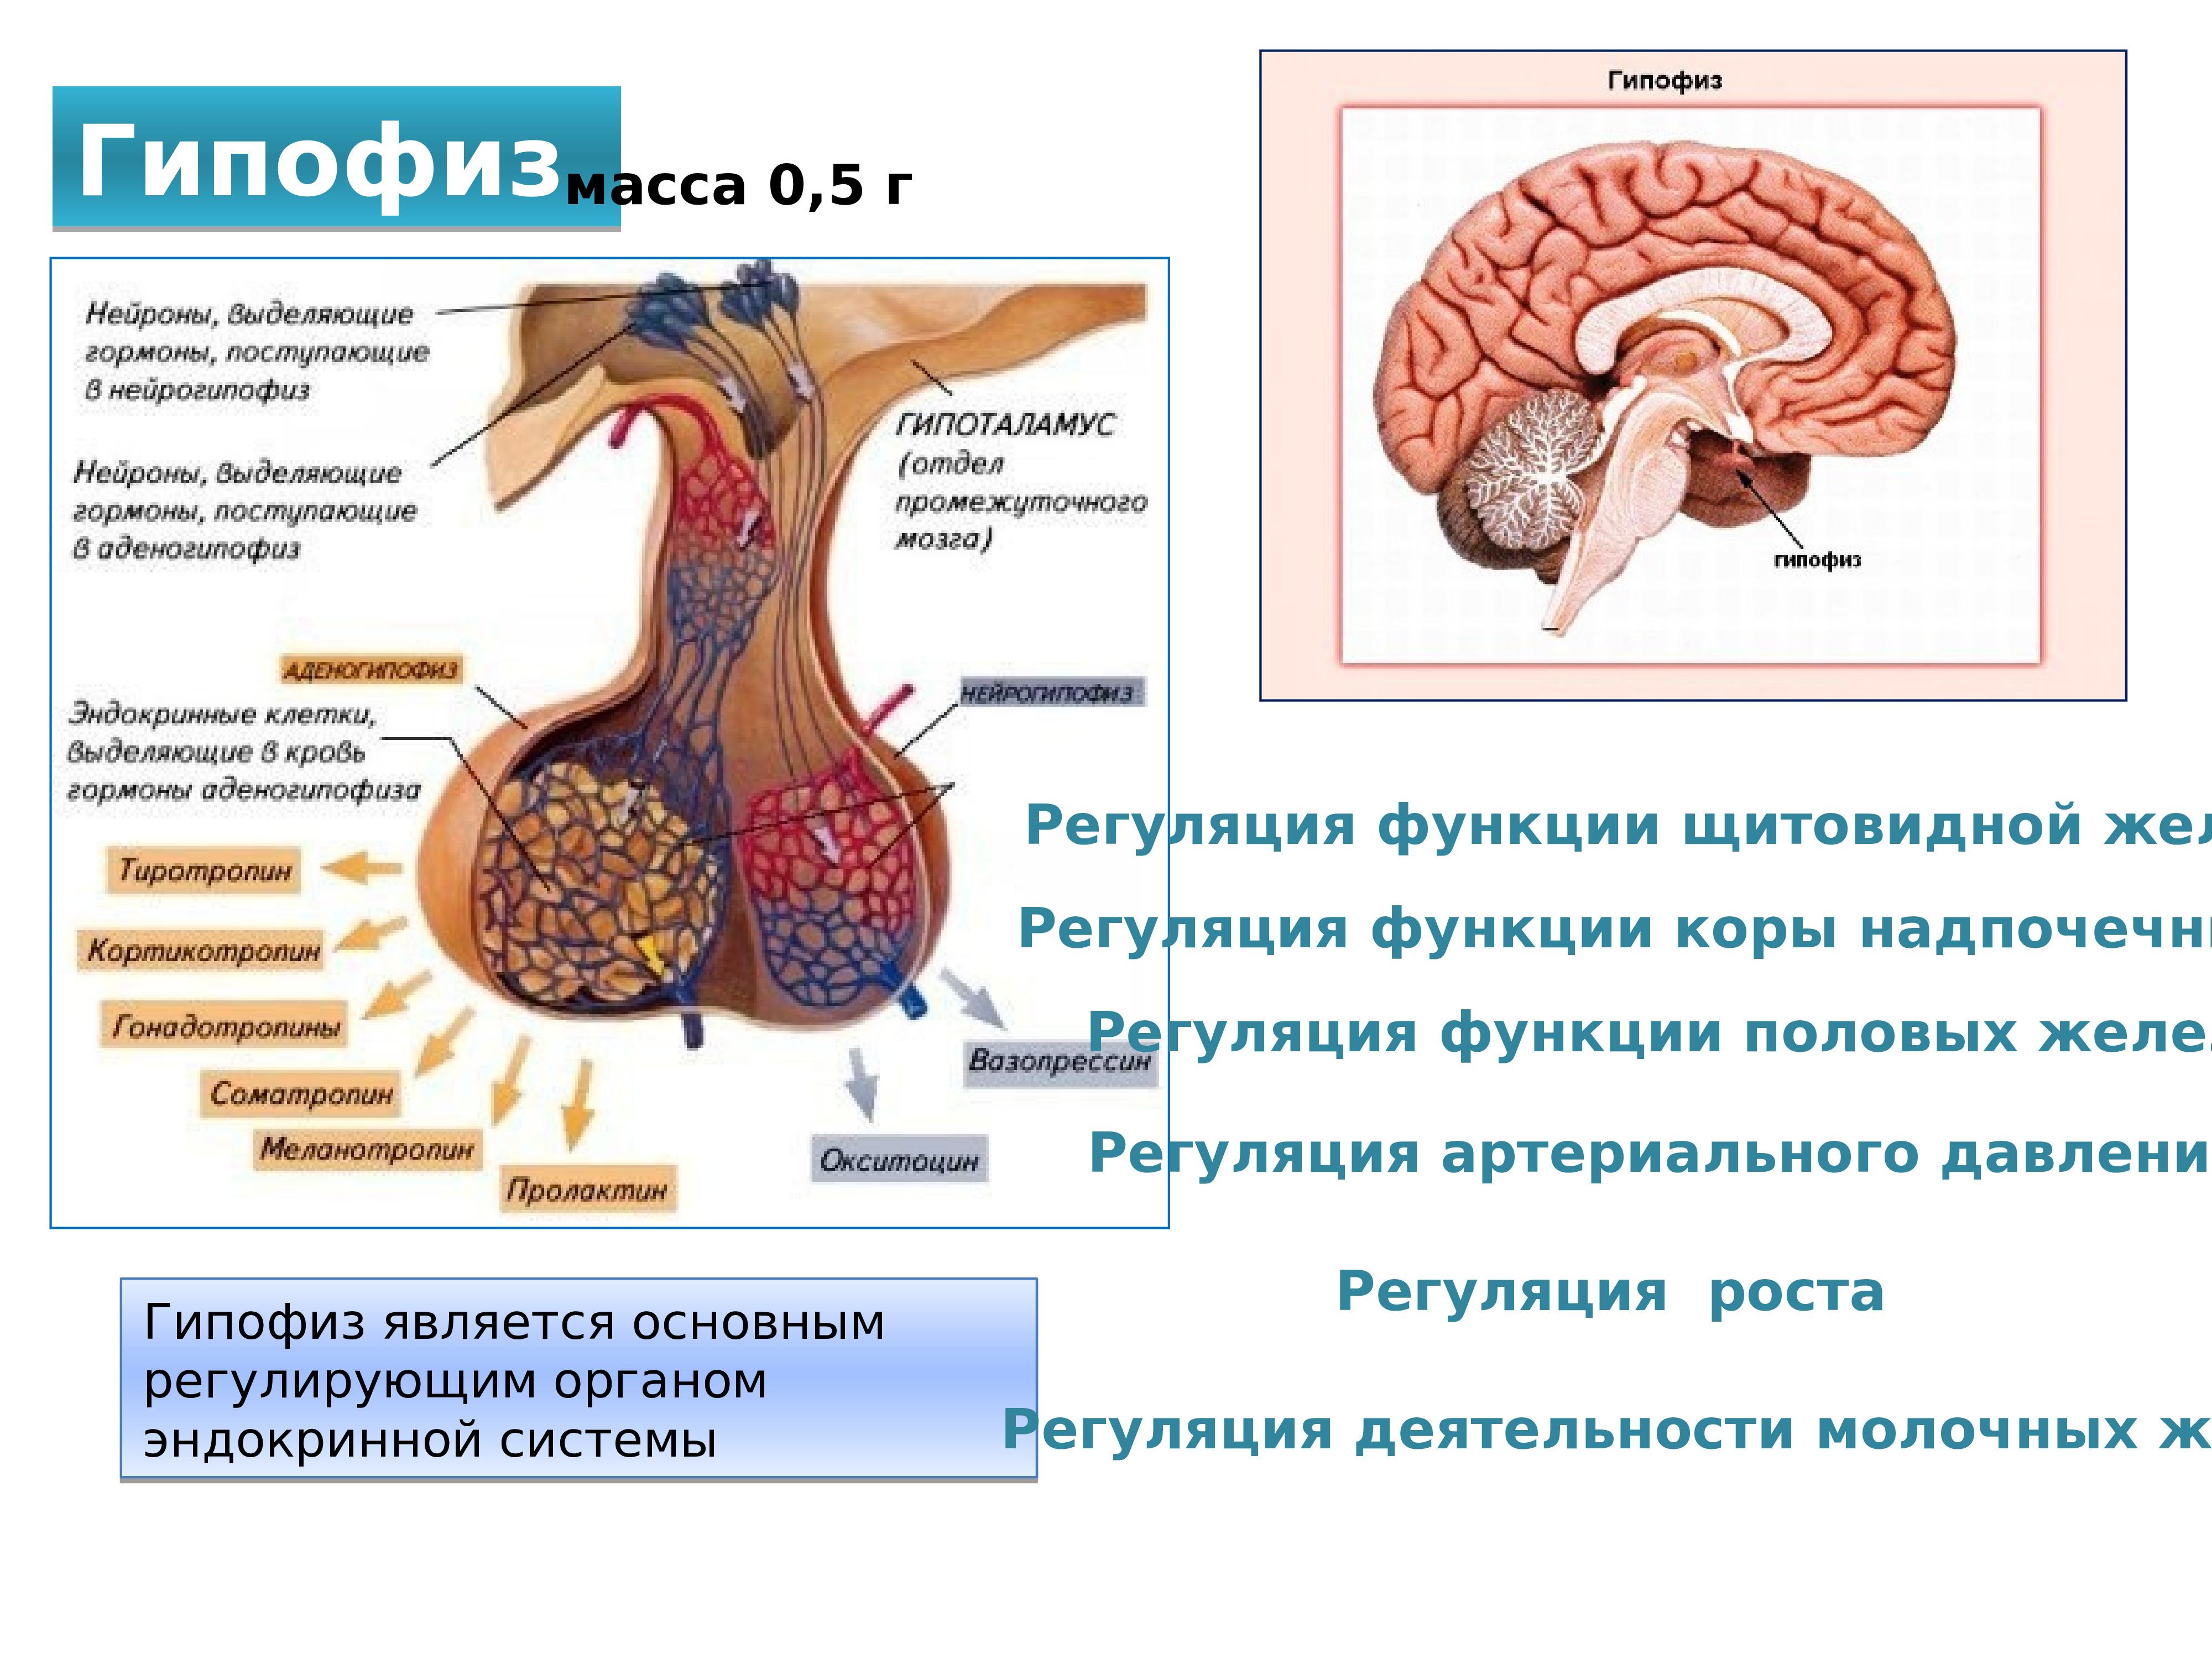 Гипофизы цена. Эндокринная система человека. Эндокринная система человека анатомия. Строение эндокринной системы. Регуляция функции щитовидной железы.